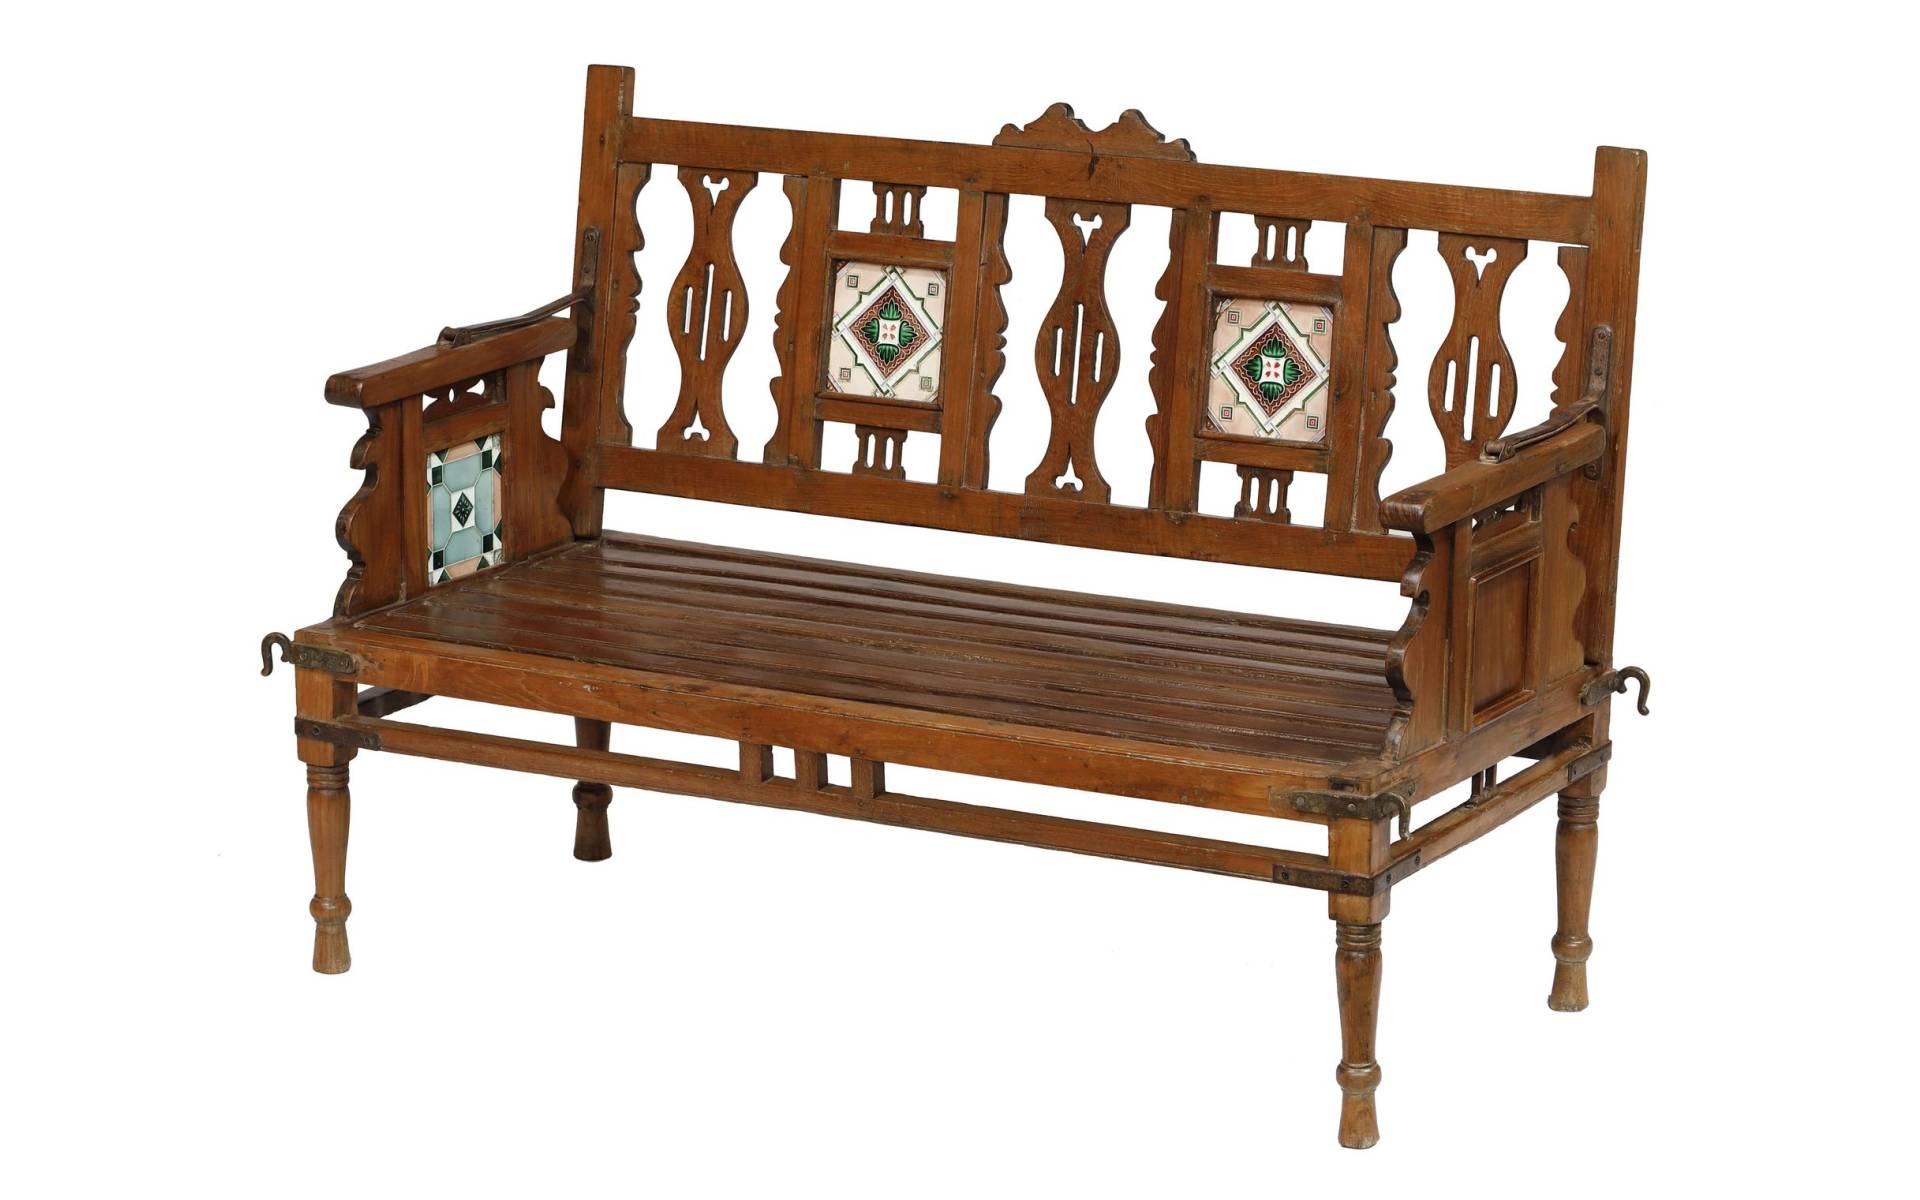 Stará lavička z teakového dreva, zdobená dlaždicami, 130x55x88cm